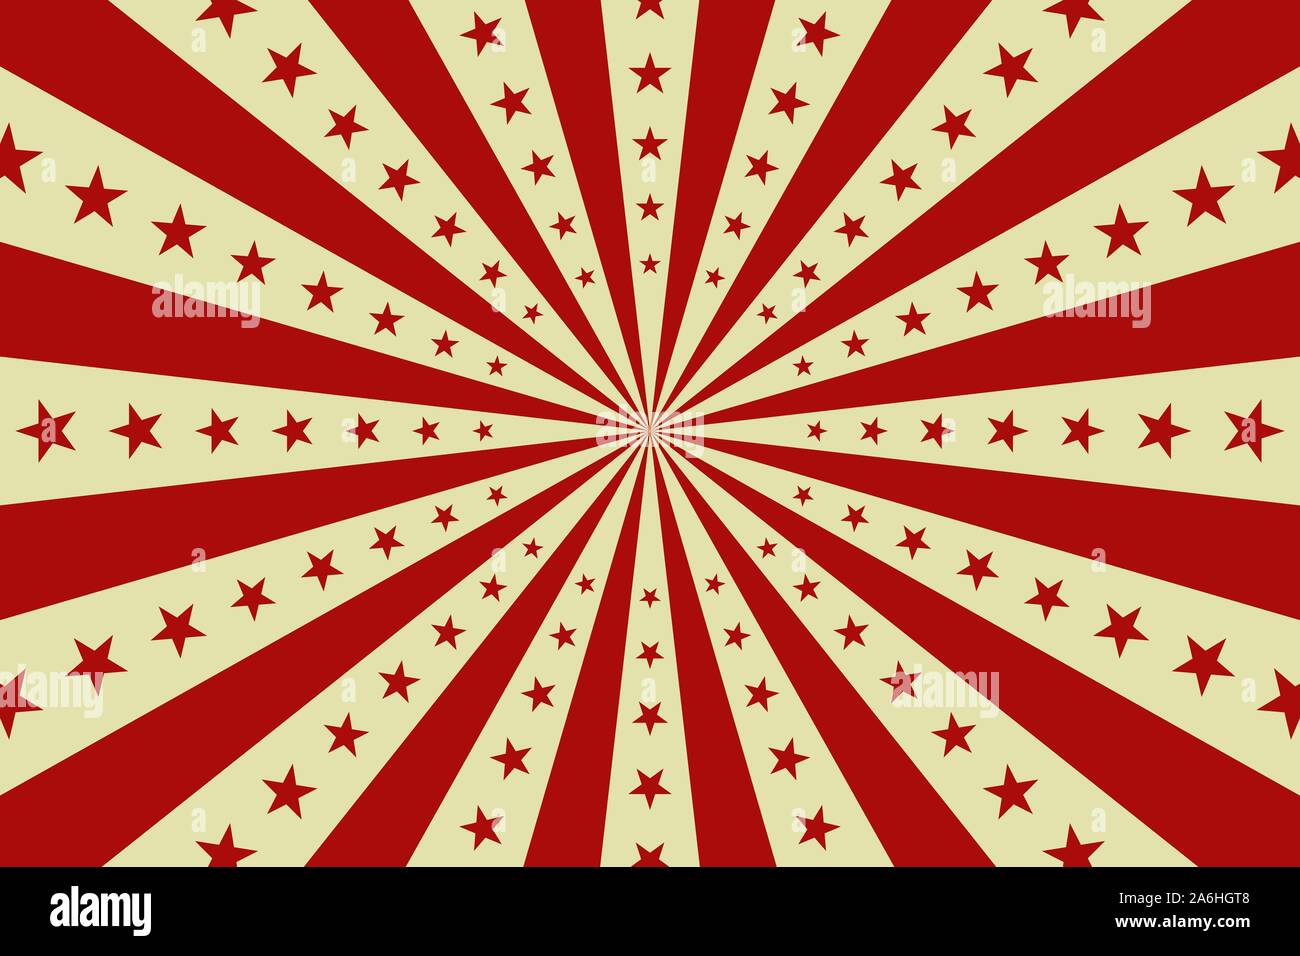 Circus vintage background vector, cirque rouge affiche rétro avec des étoiles, cartoon carnival, papier peint Motif bande dessinée starburst Illustration de Vecteur